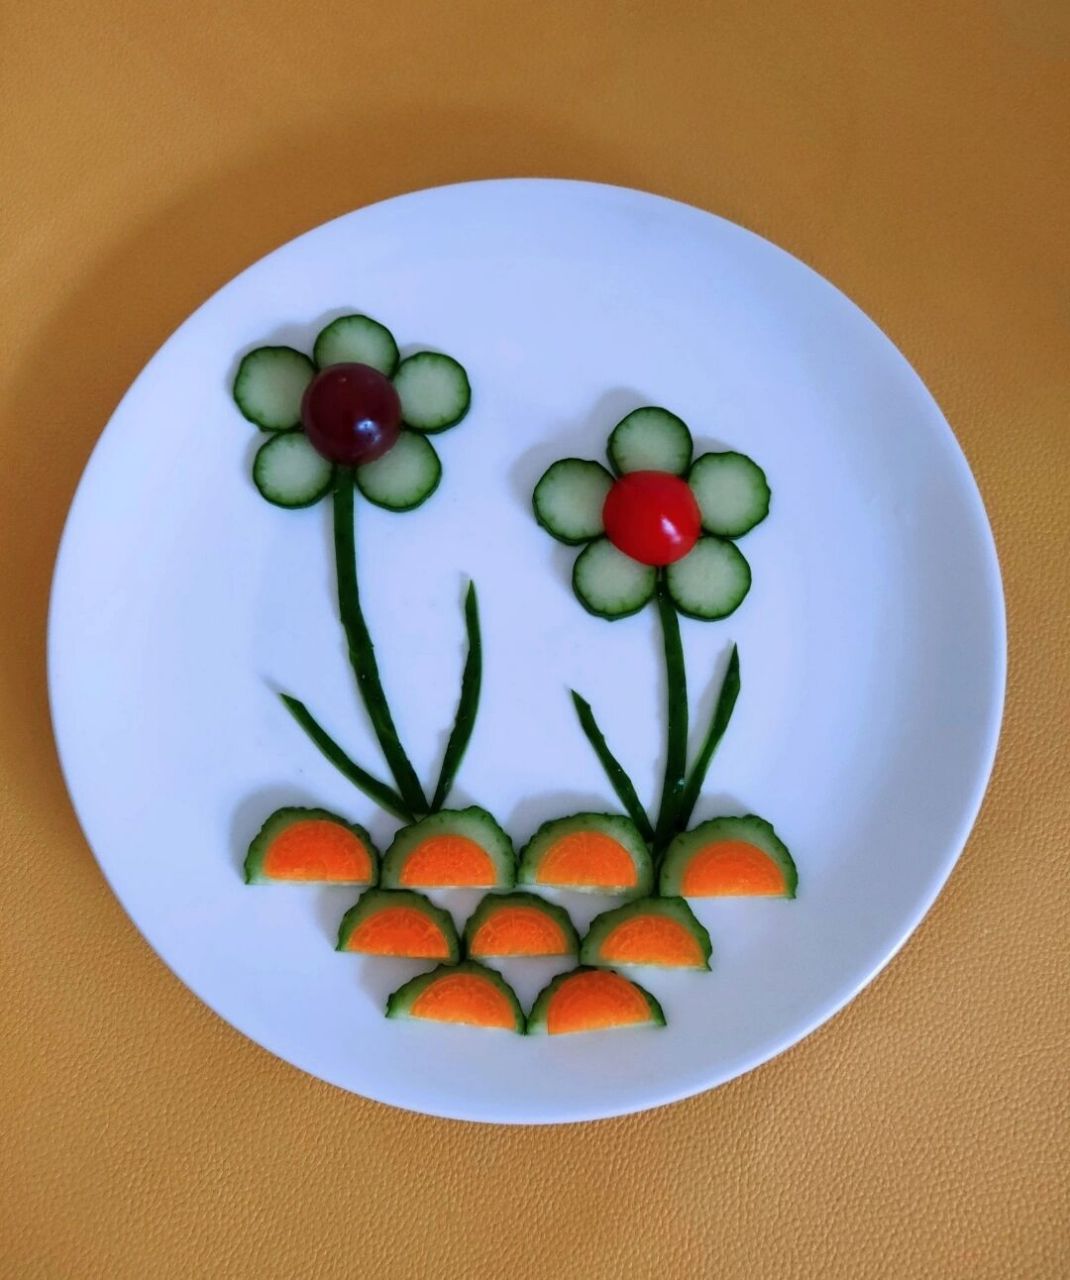 蔬菜拼盘既简单又漂亮图片